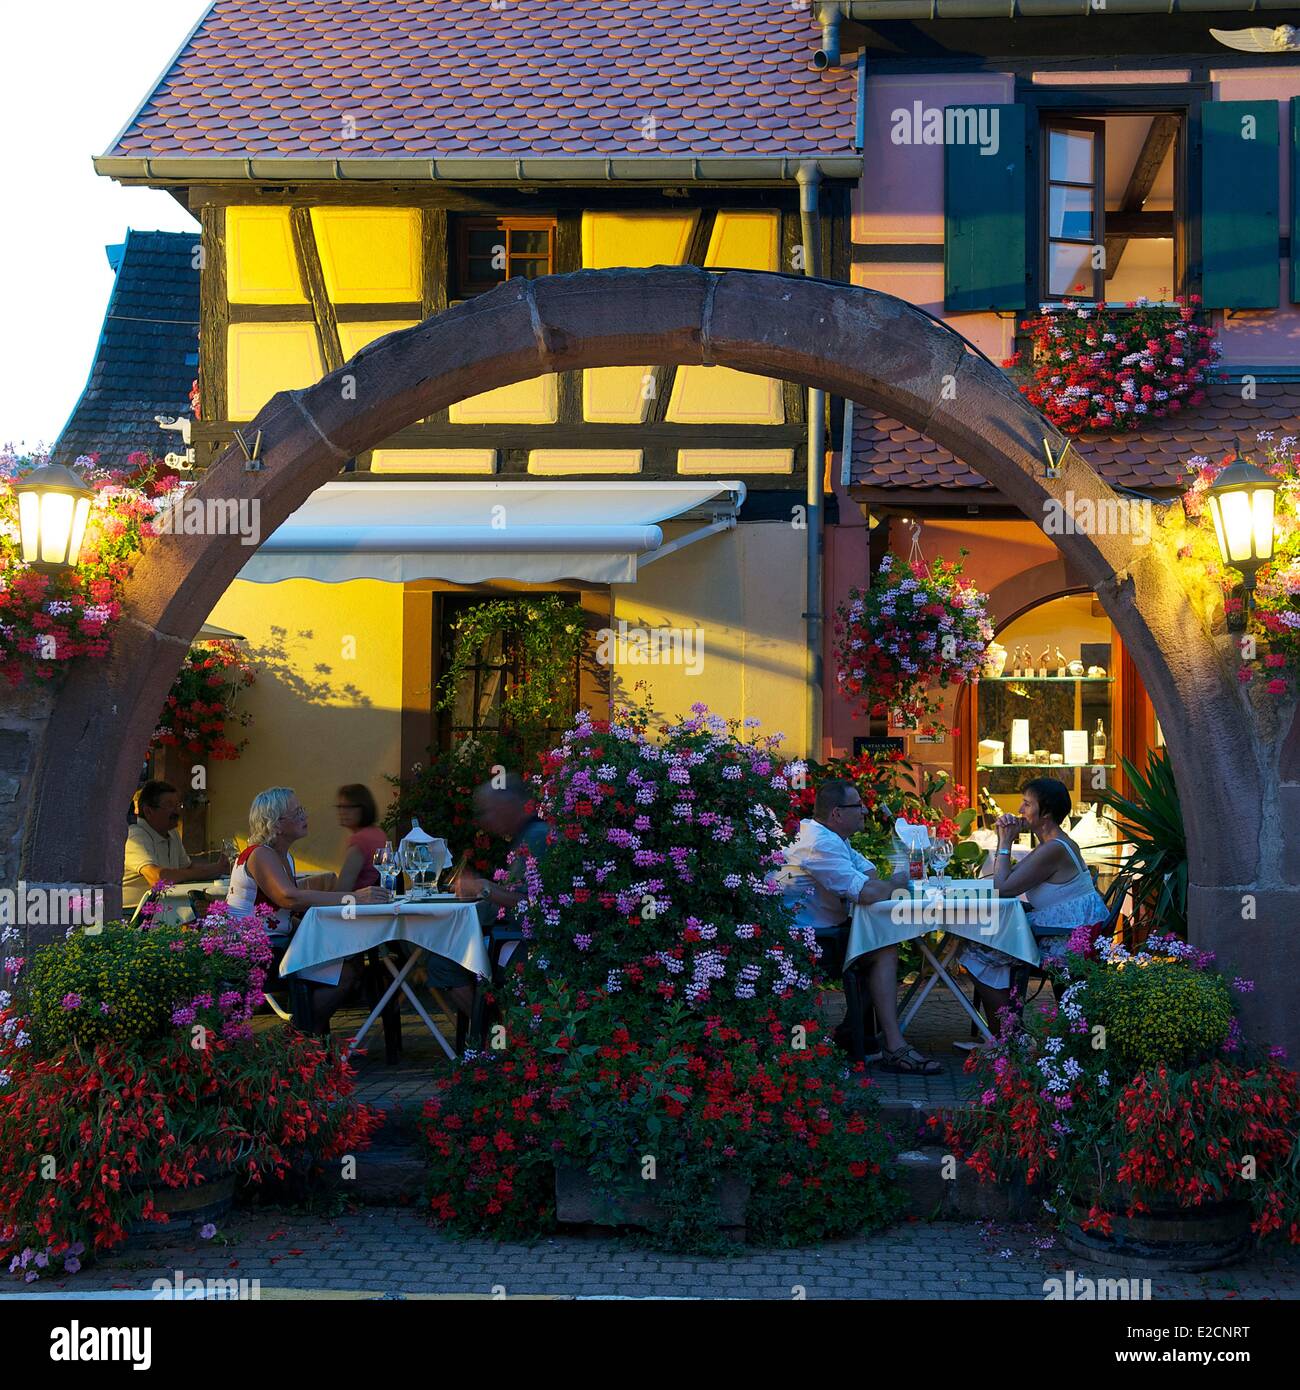 France Haut Rhin Alsace Wine Route Eguisheim labelled Les Plus Beaux Villages de France (The Most Beautiful Villages of France) Stock Photo